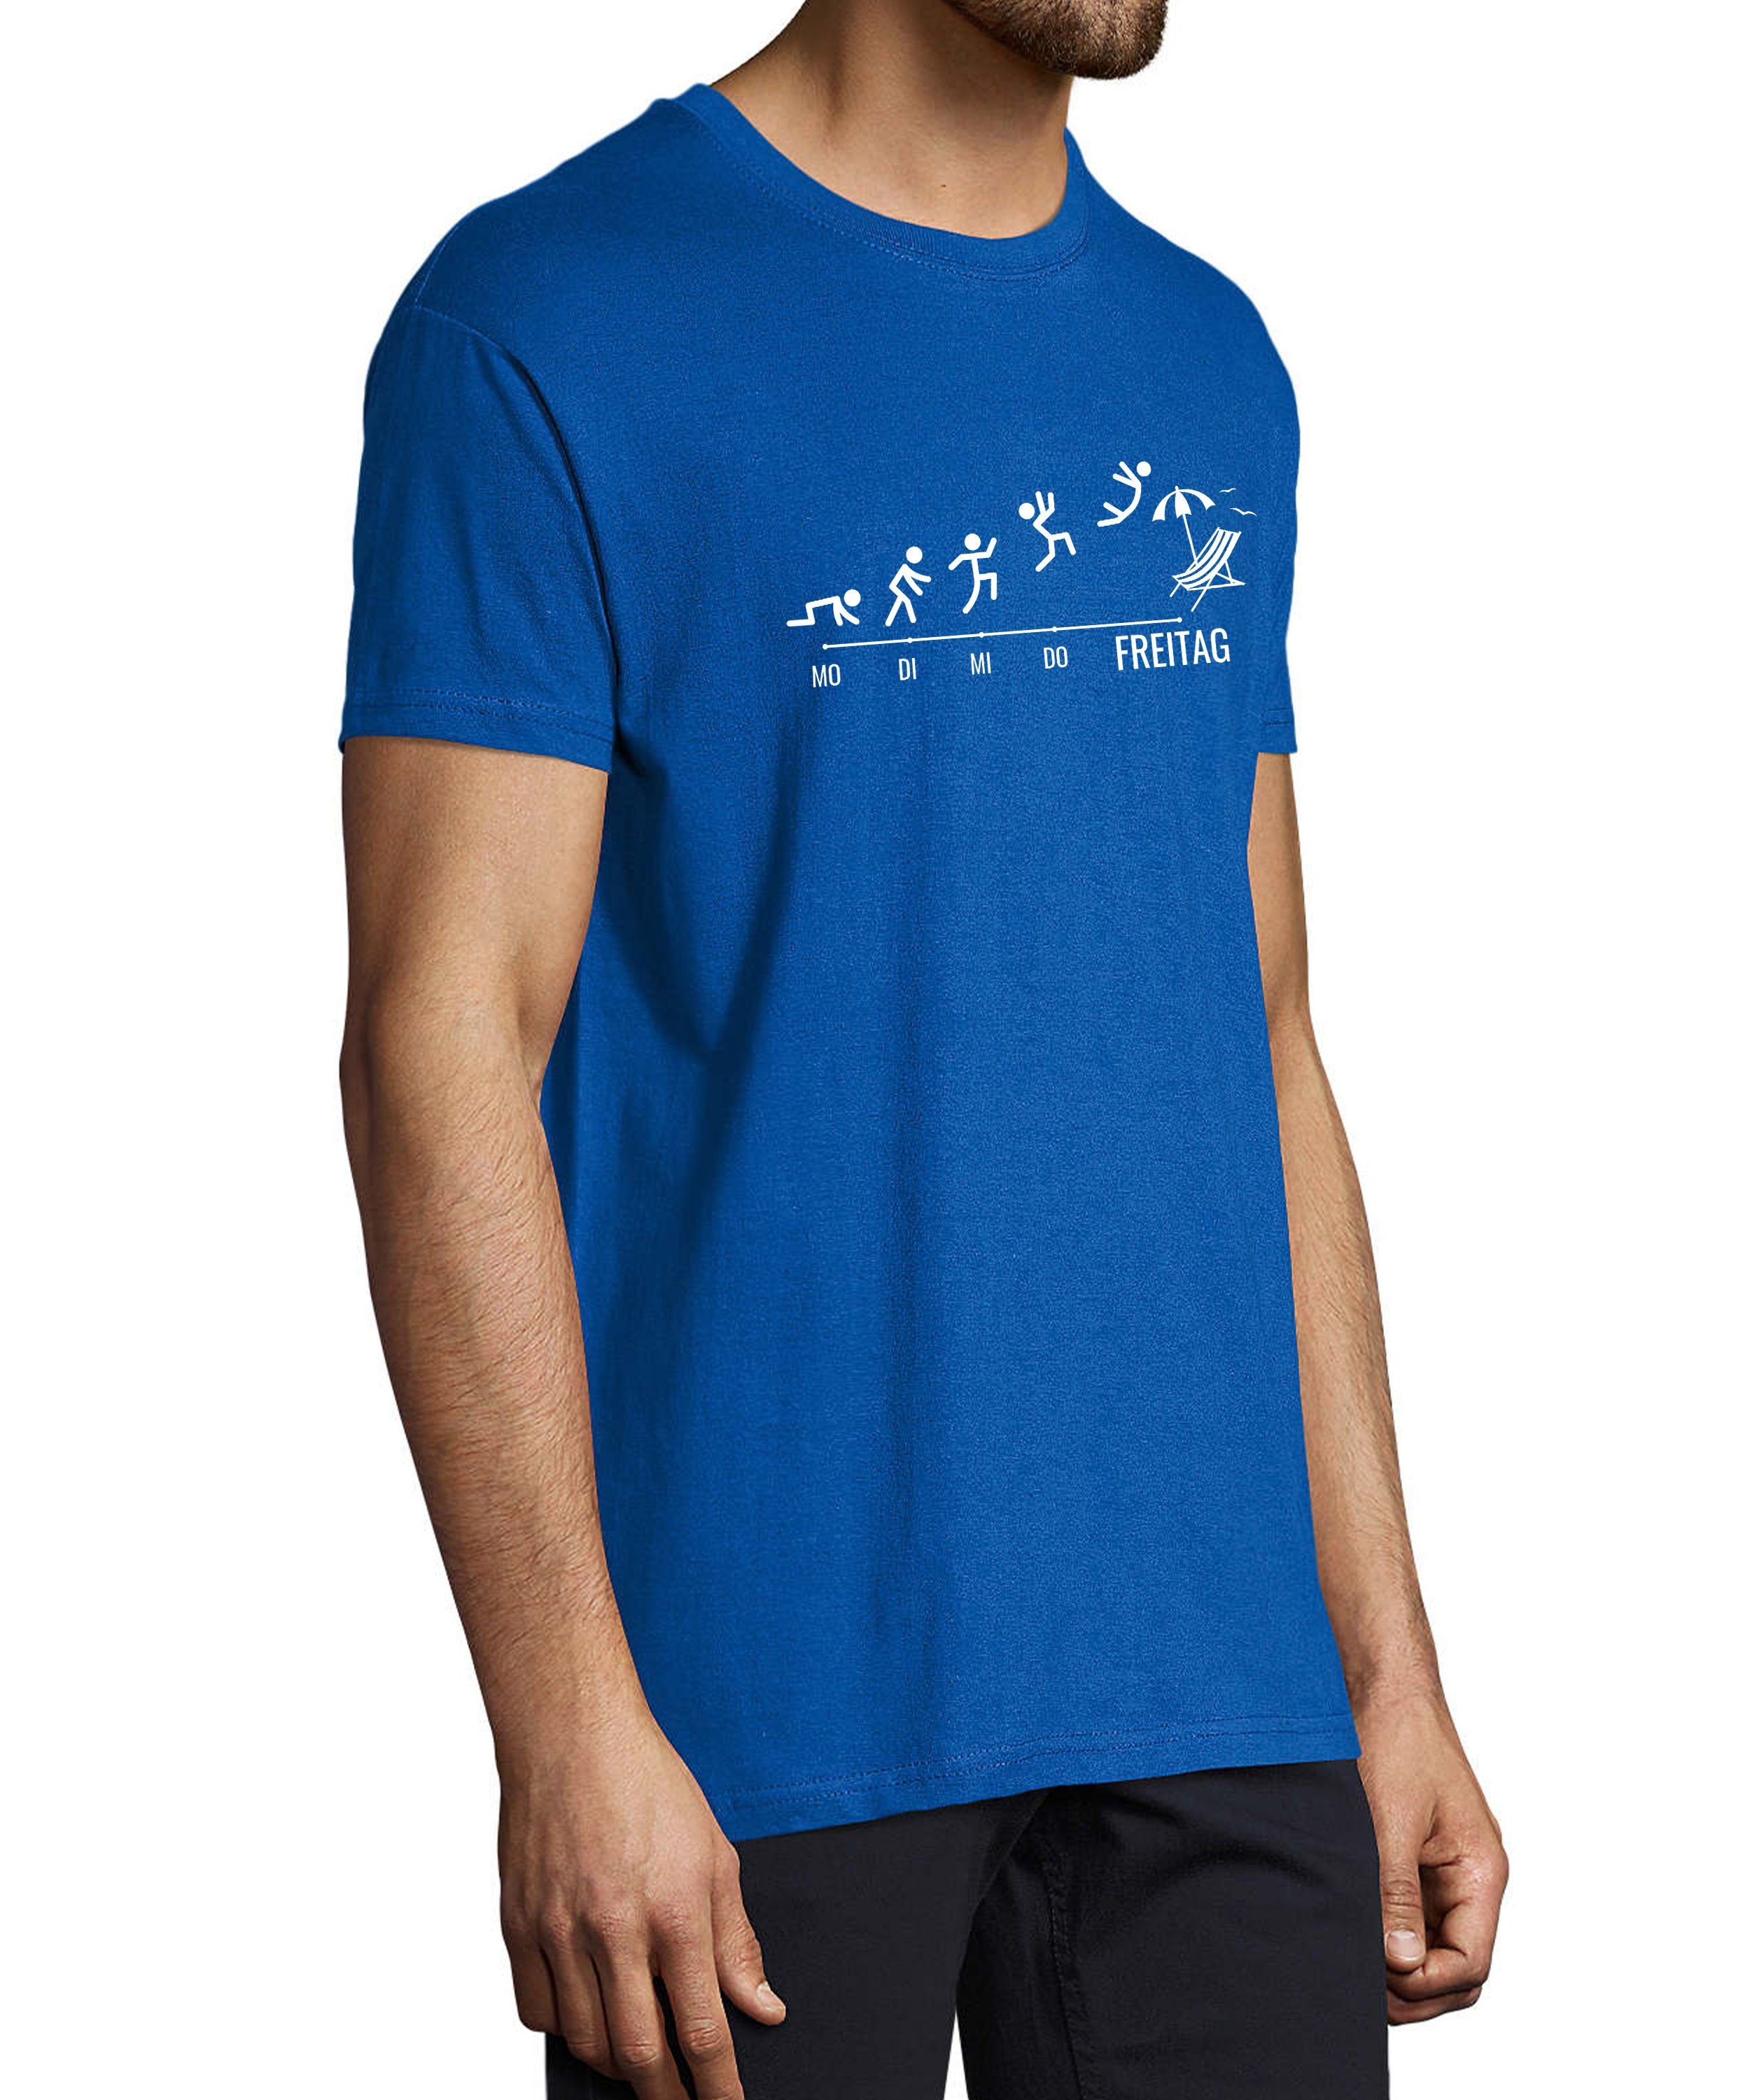 MyDesign24 T-Shirt Herren Fun Wochentage Aufdruck Baumwollshirt - Strichmännchen mit blau Print i309 royal Regular mit Shirt Fit